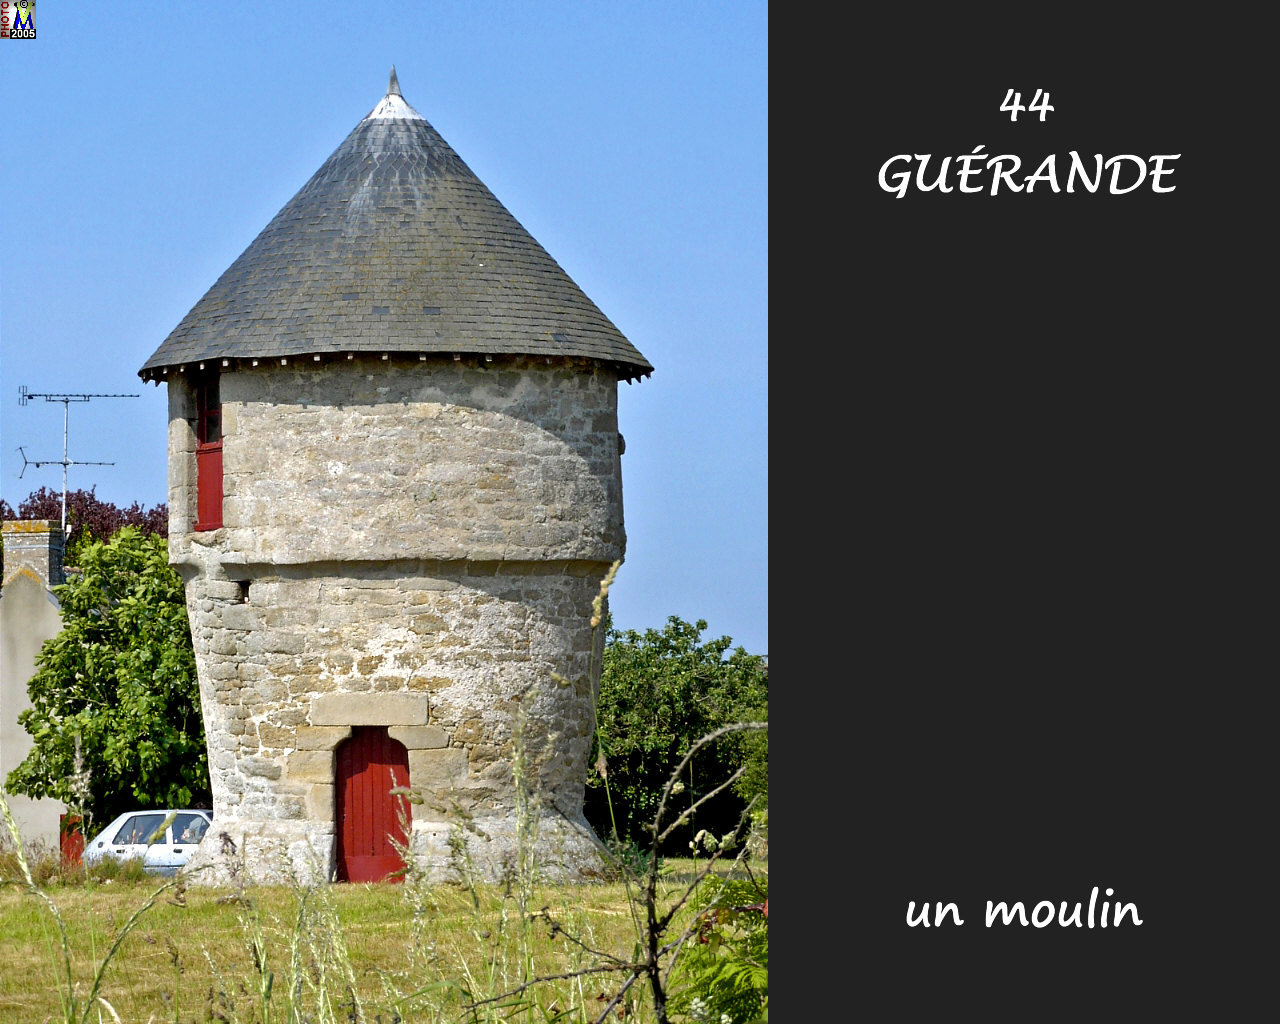 44GUERANDE_moulin_102.jpg